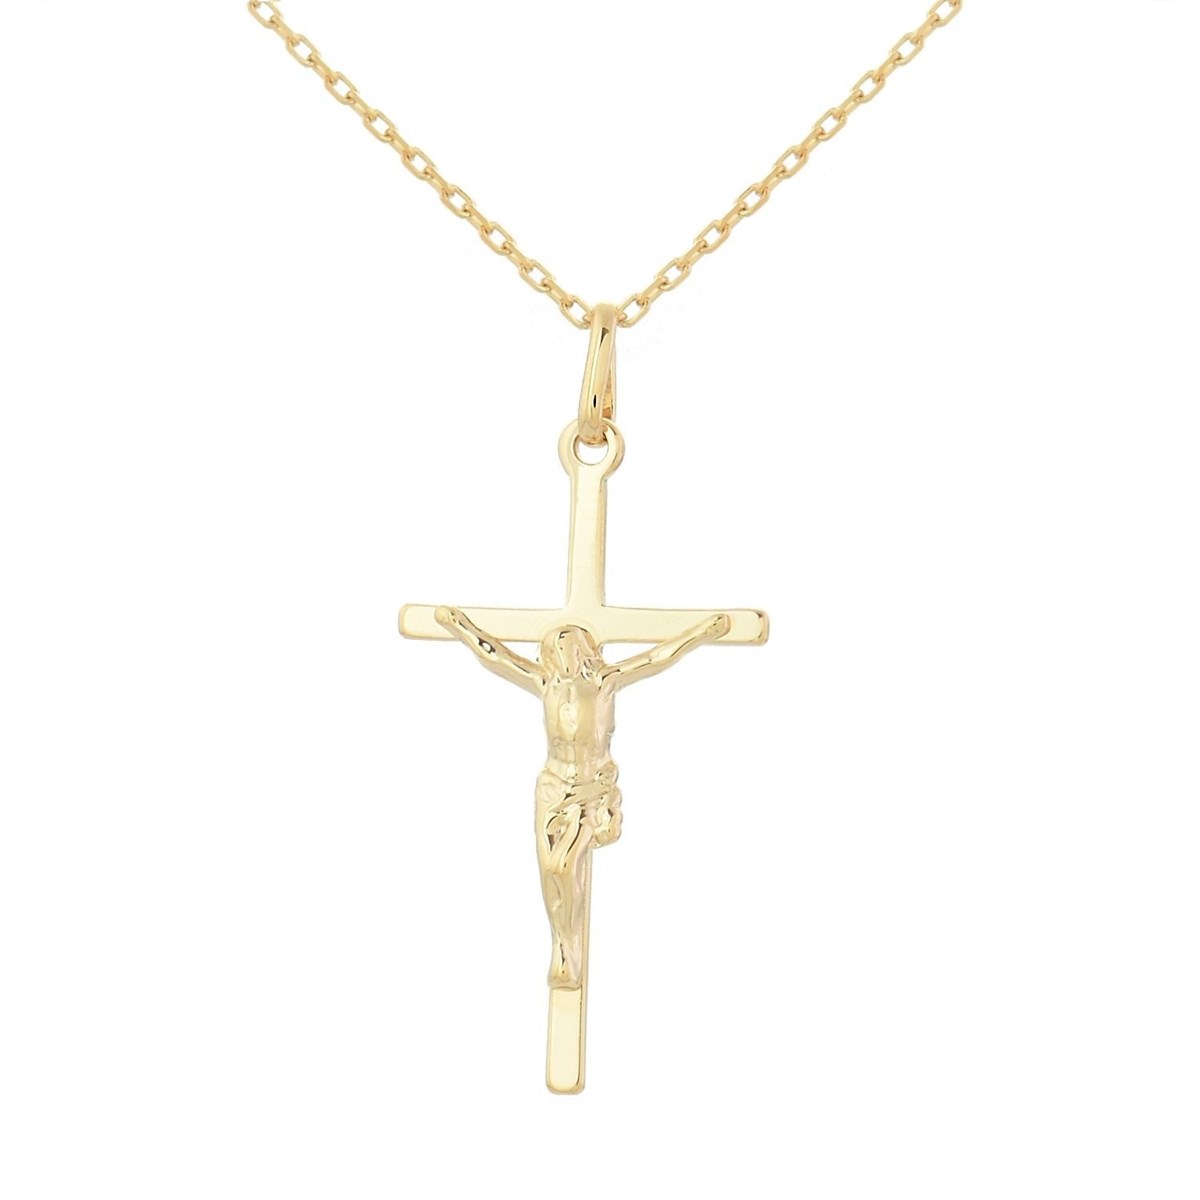 Collier croix crucifix Jésus Christ Plaqué OR 750 3 microns